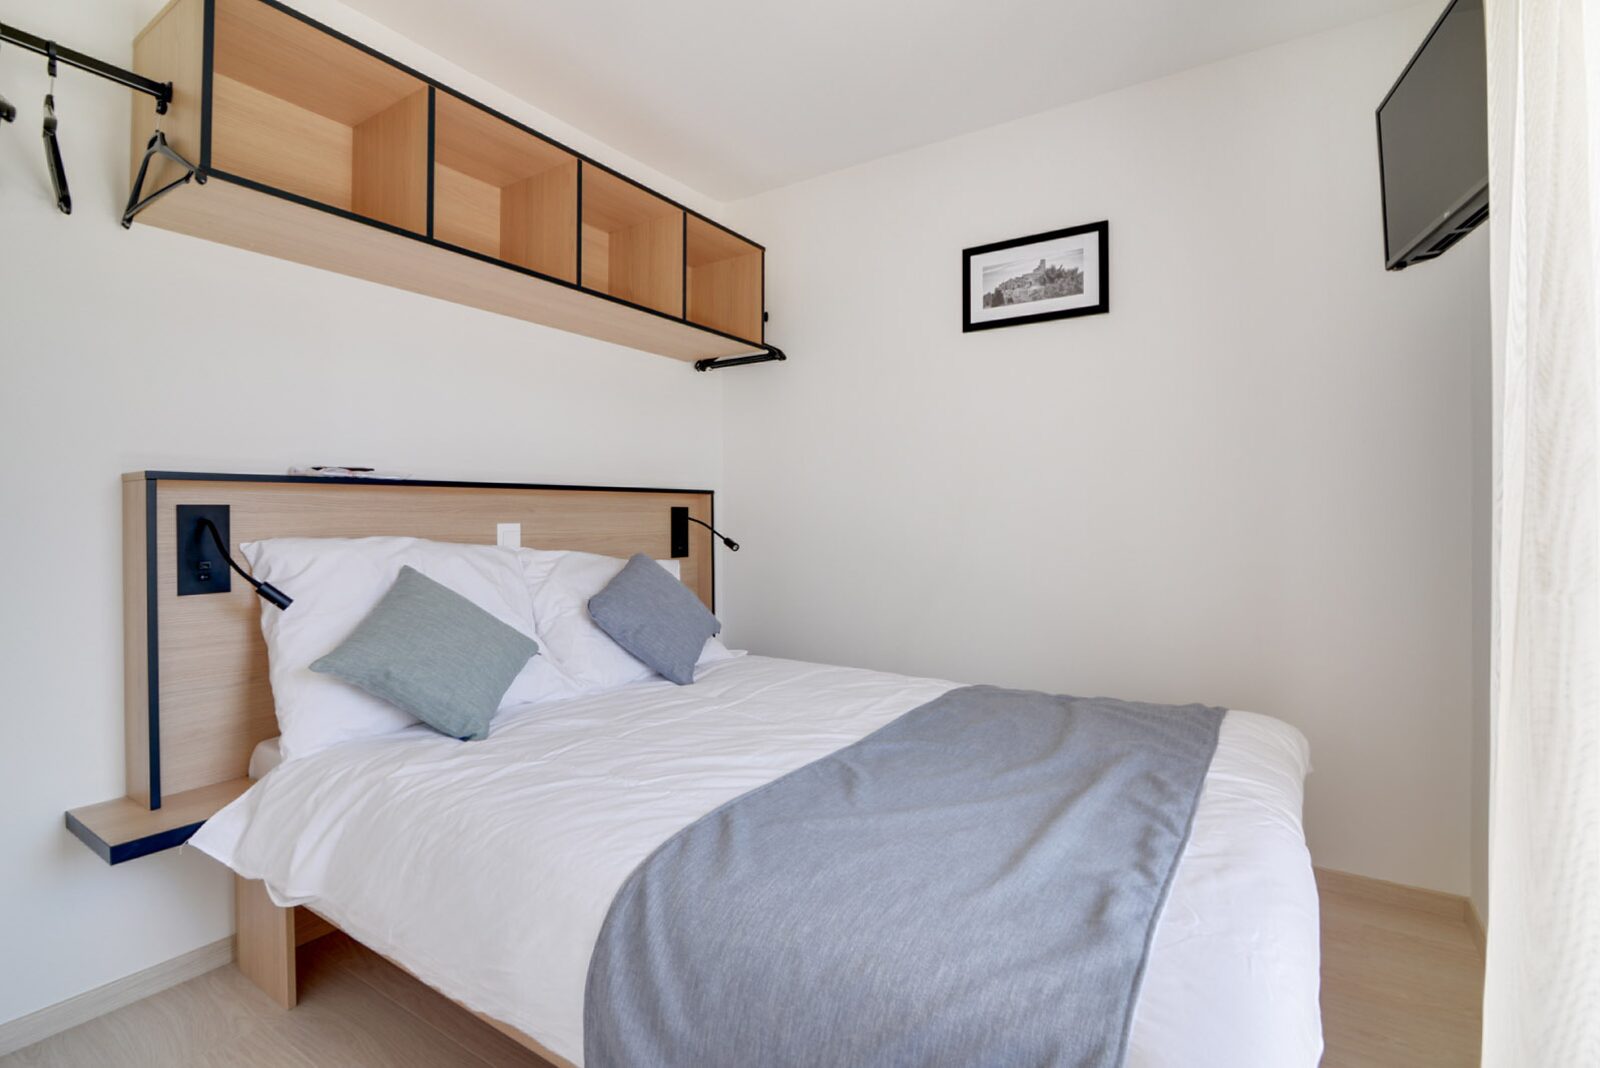 Nieuwe deluxe suite voor 4 personen met 2 kamers - tweepersoonsbed en enkele bedden